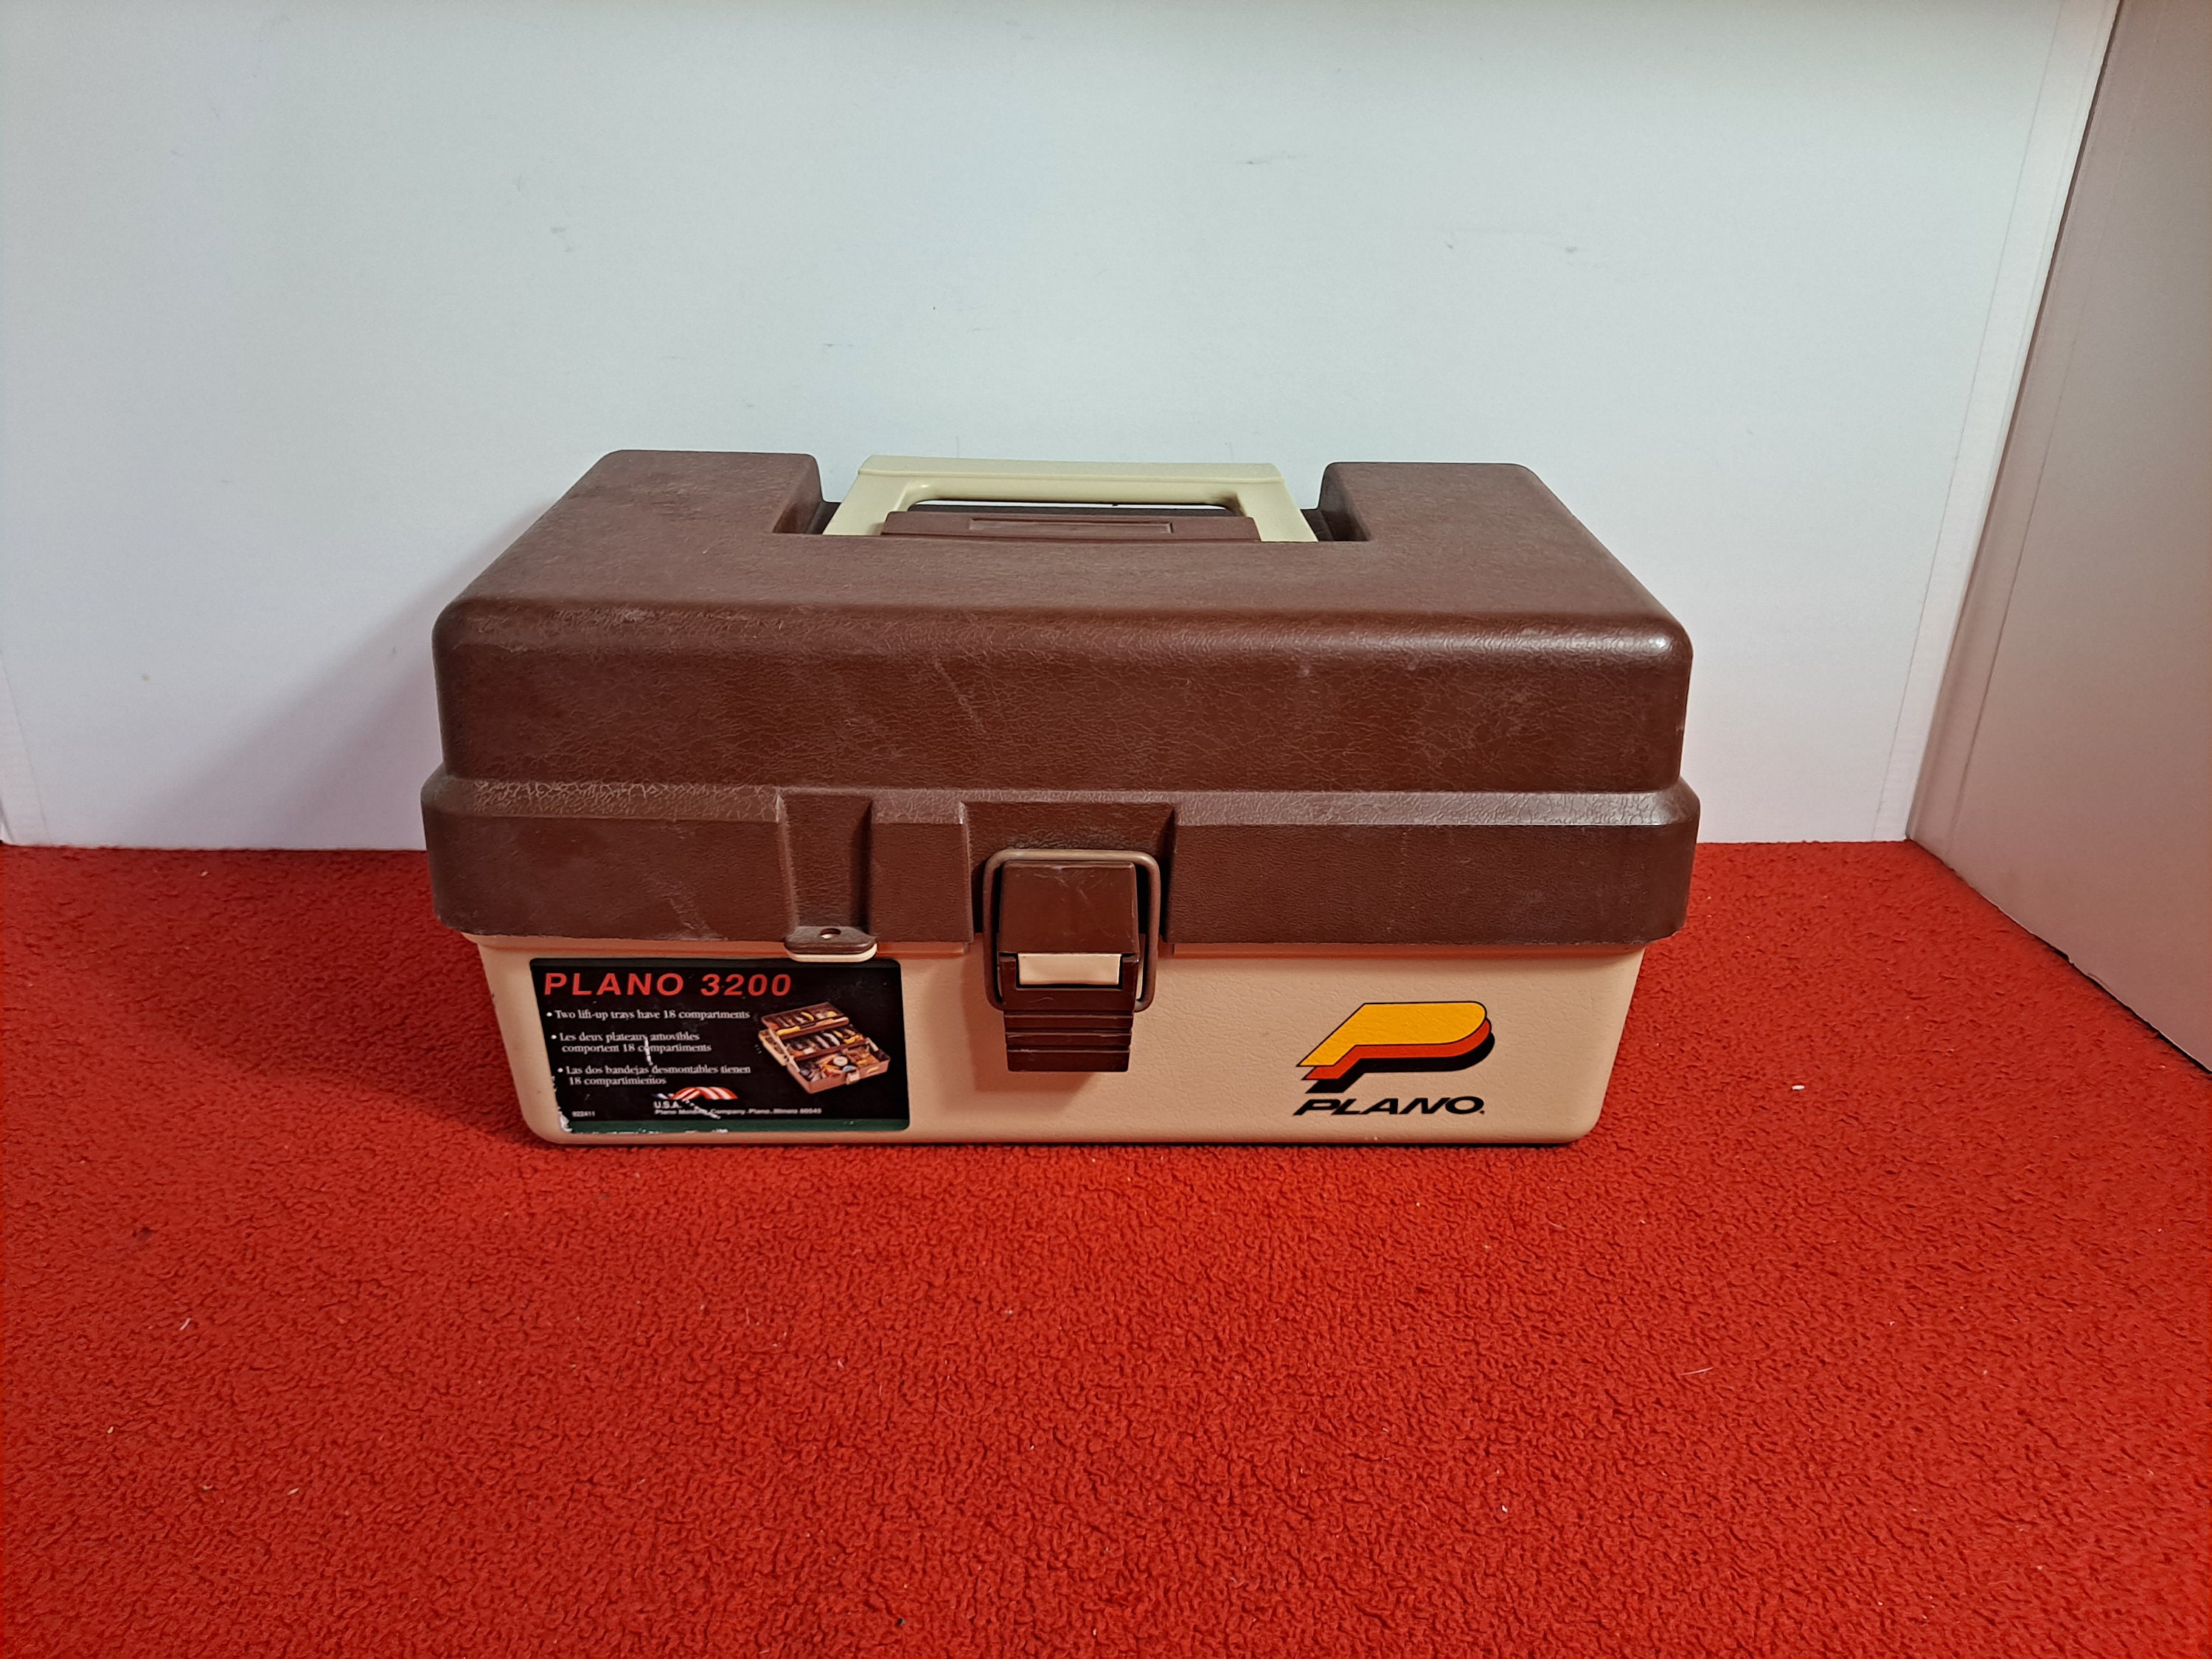 Vintage tackle box, plano 3200 tackle box, plastic tackle box, art supply  box, craft box